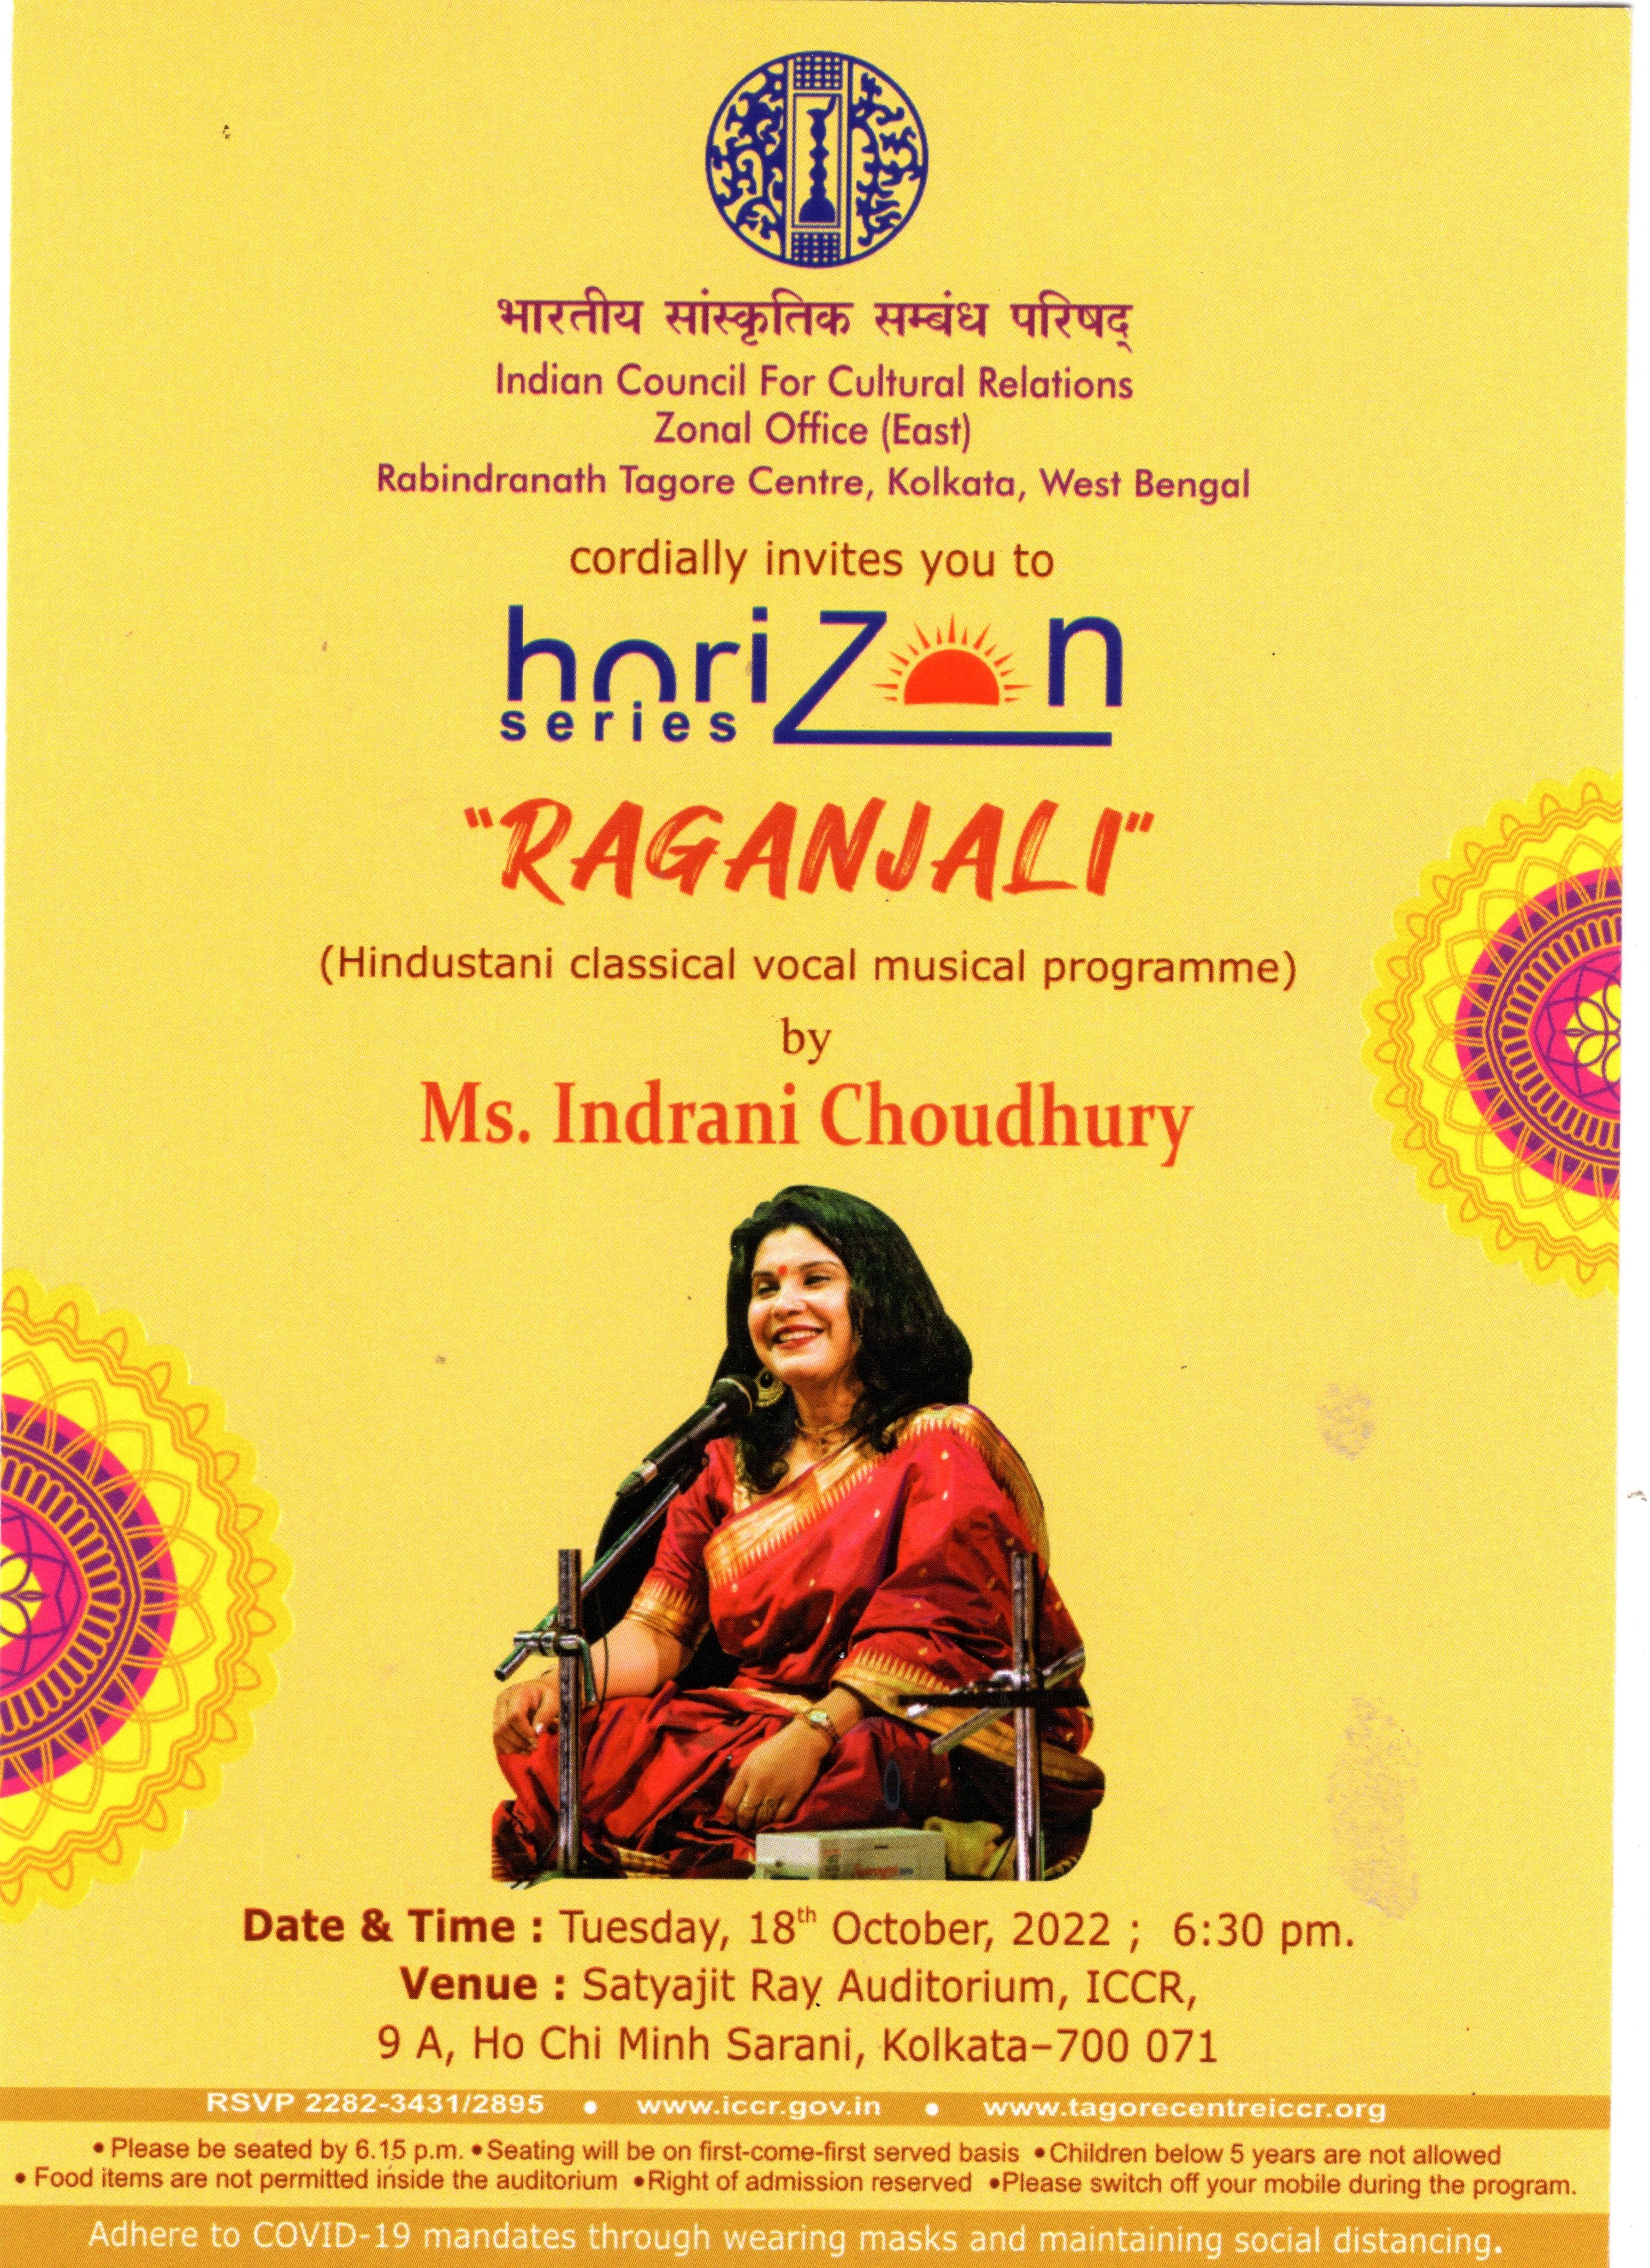 एमएस द्वारा एक हिंदुस्तानी शास्त्रीय गायन संगीत कार्यक्रम "रागंजलि"। इंद्राणी चौधरी मंगलवार, 18 अक्टूबर, 2022 को सत्यजीत रे सभागार, रवींद्रनाथ टैगोर केंद्र, आईसीसीआर, कोलकाता में - 700 071, 6:30 अपराह्न